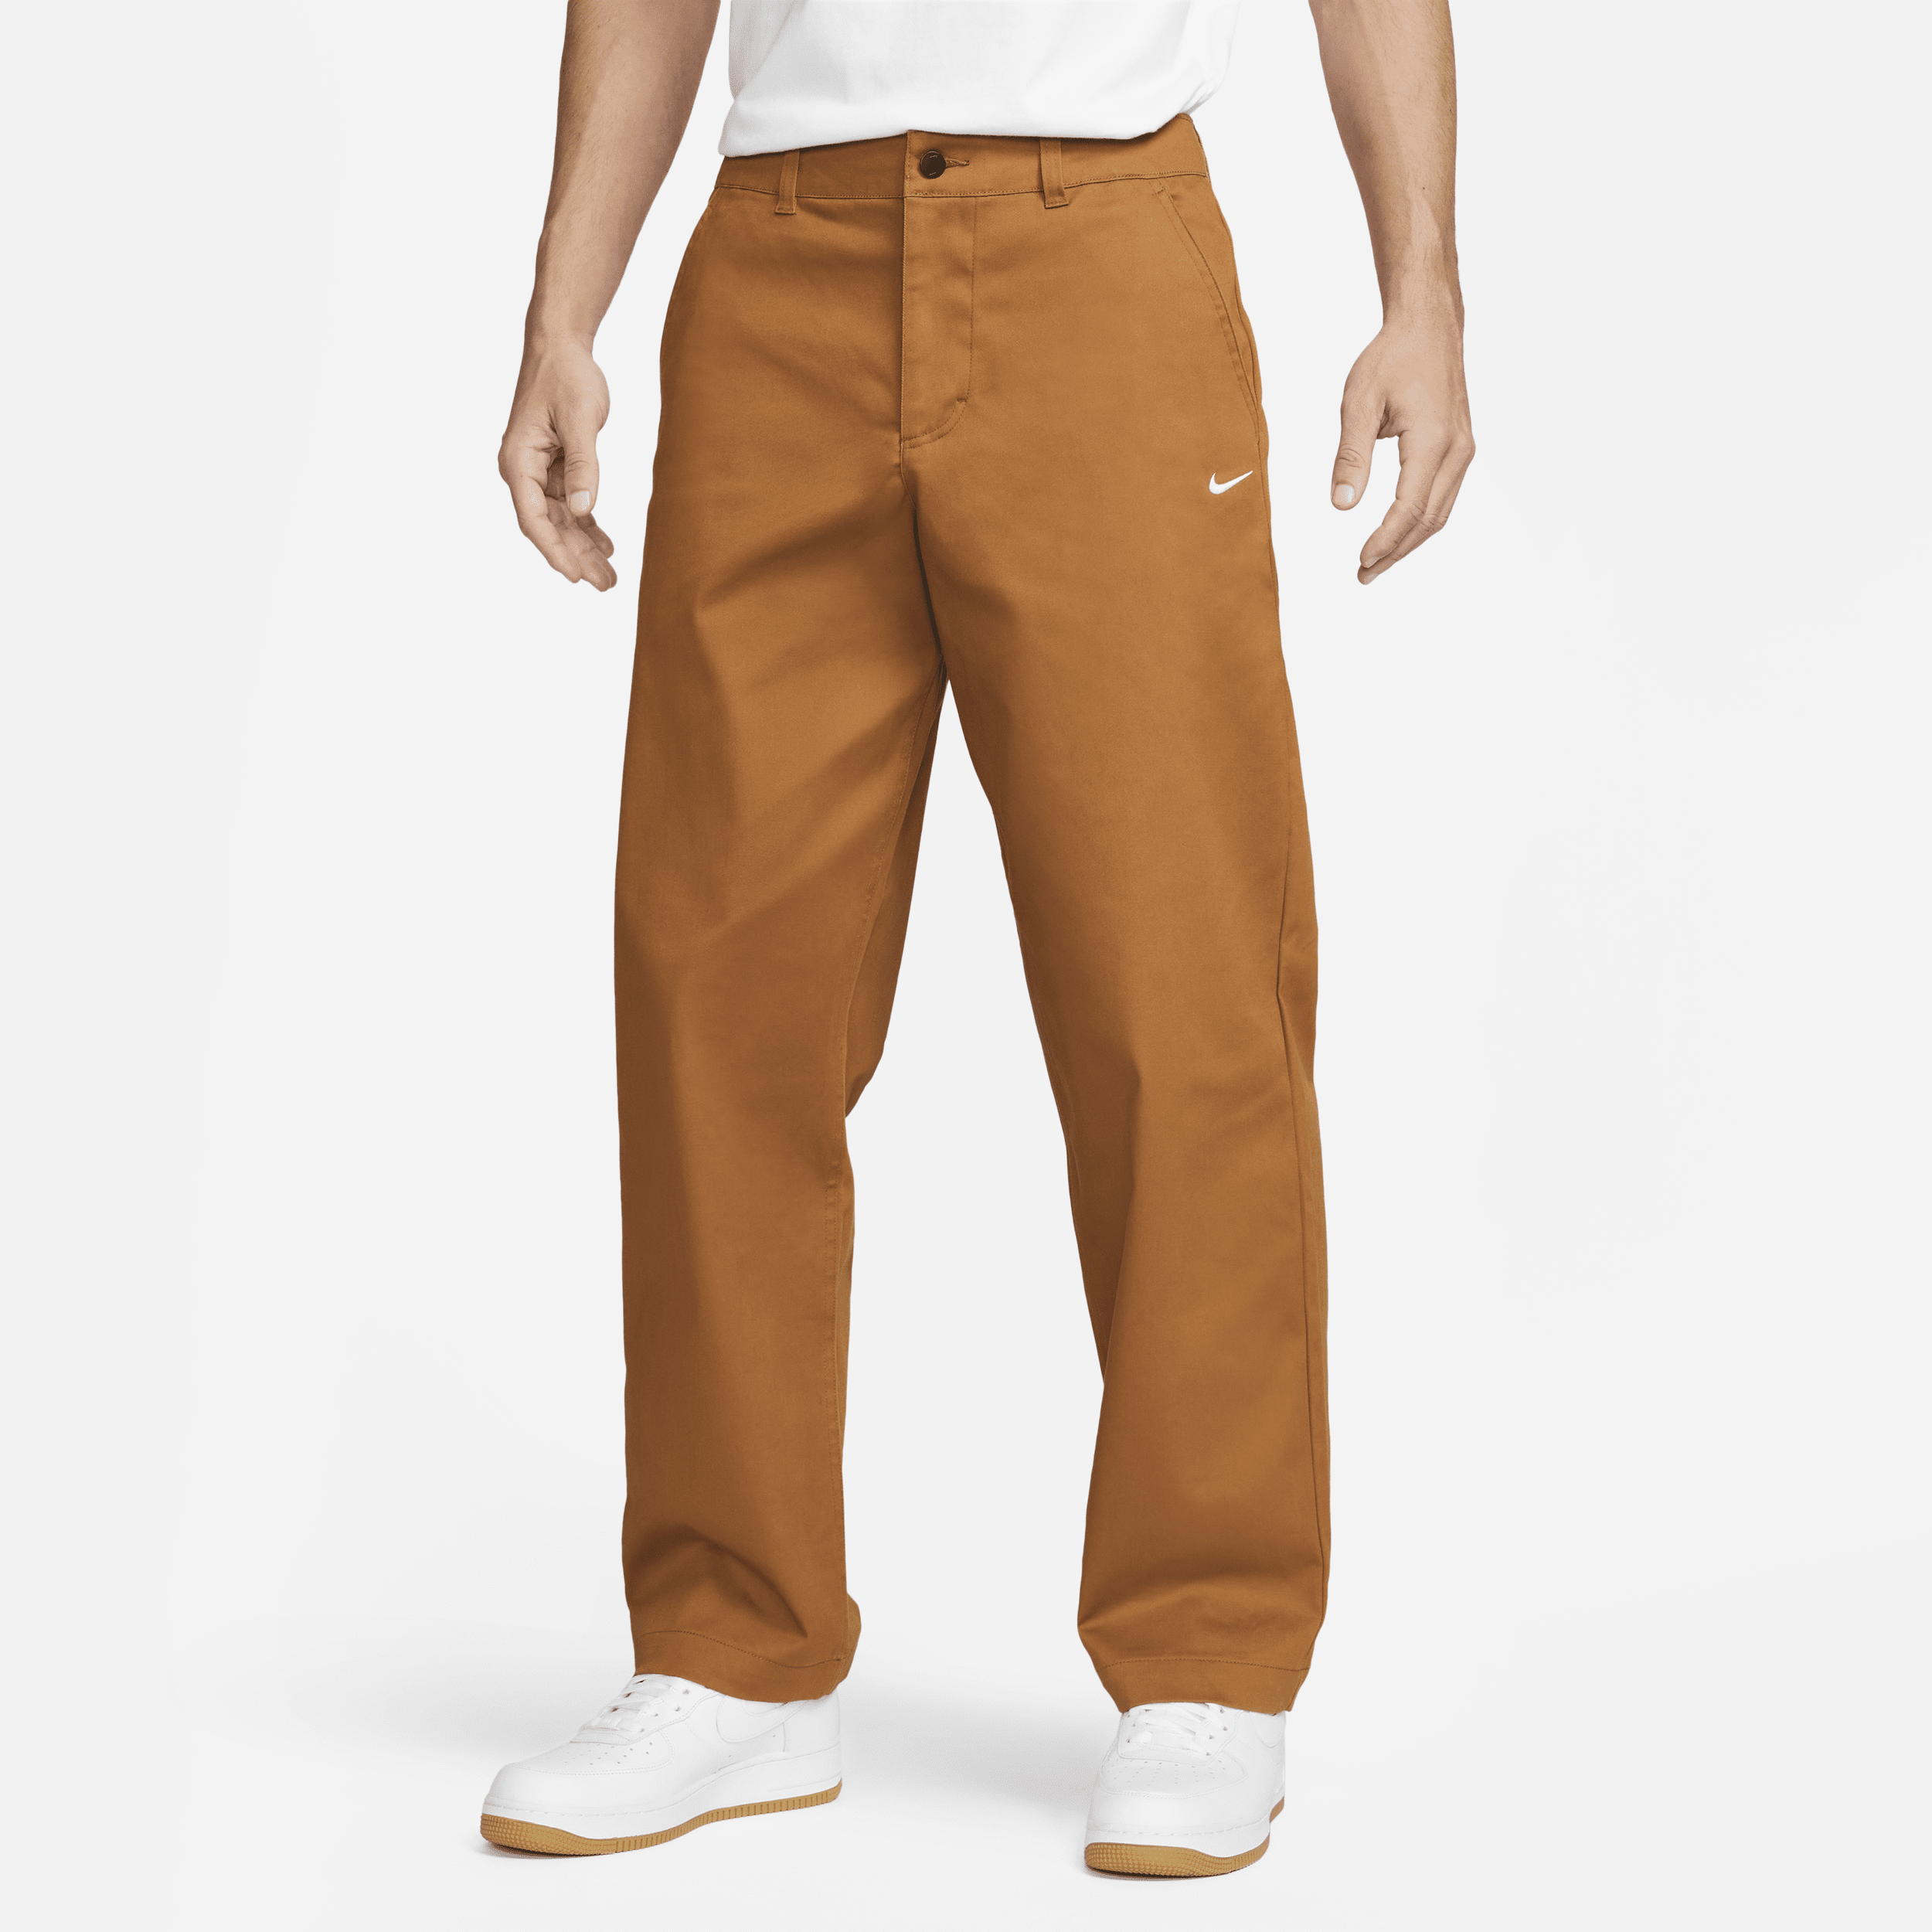 Nike Life Pantalón chino - Hombre - Marrón